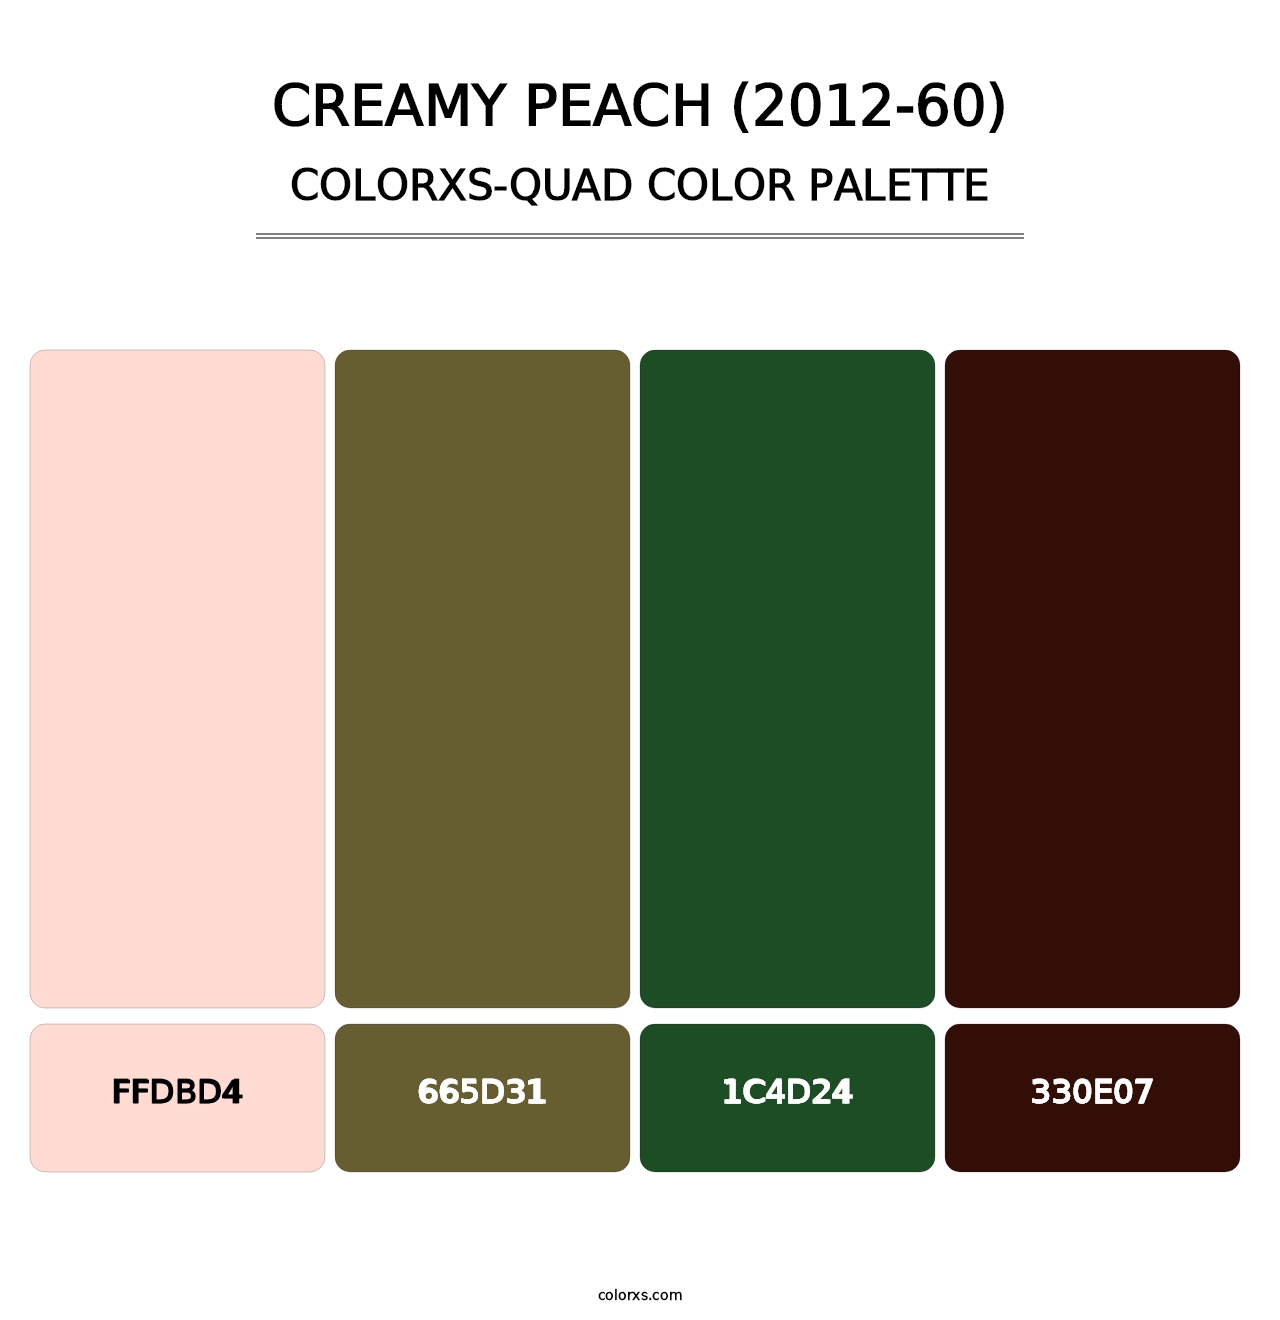 Creamy Peach (2012-60) - Colorxs Quad Palette